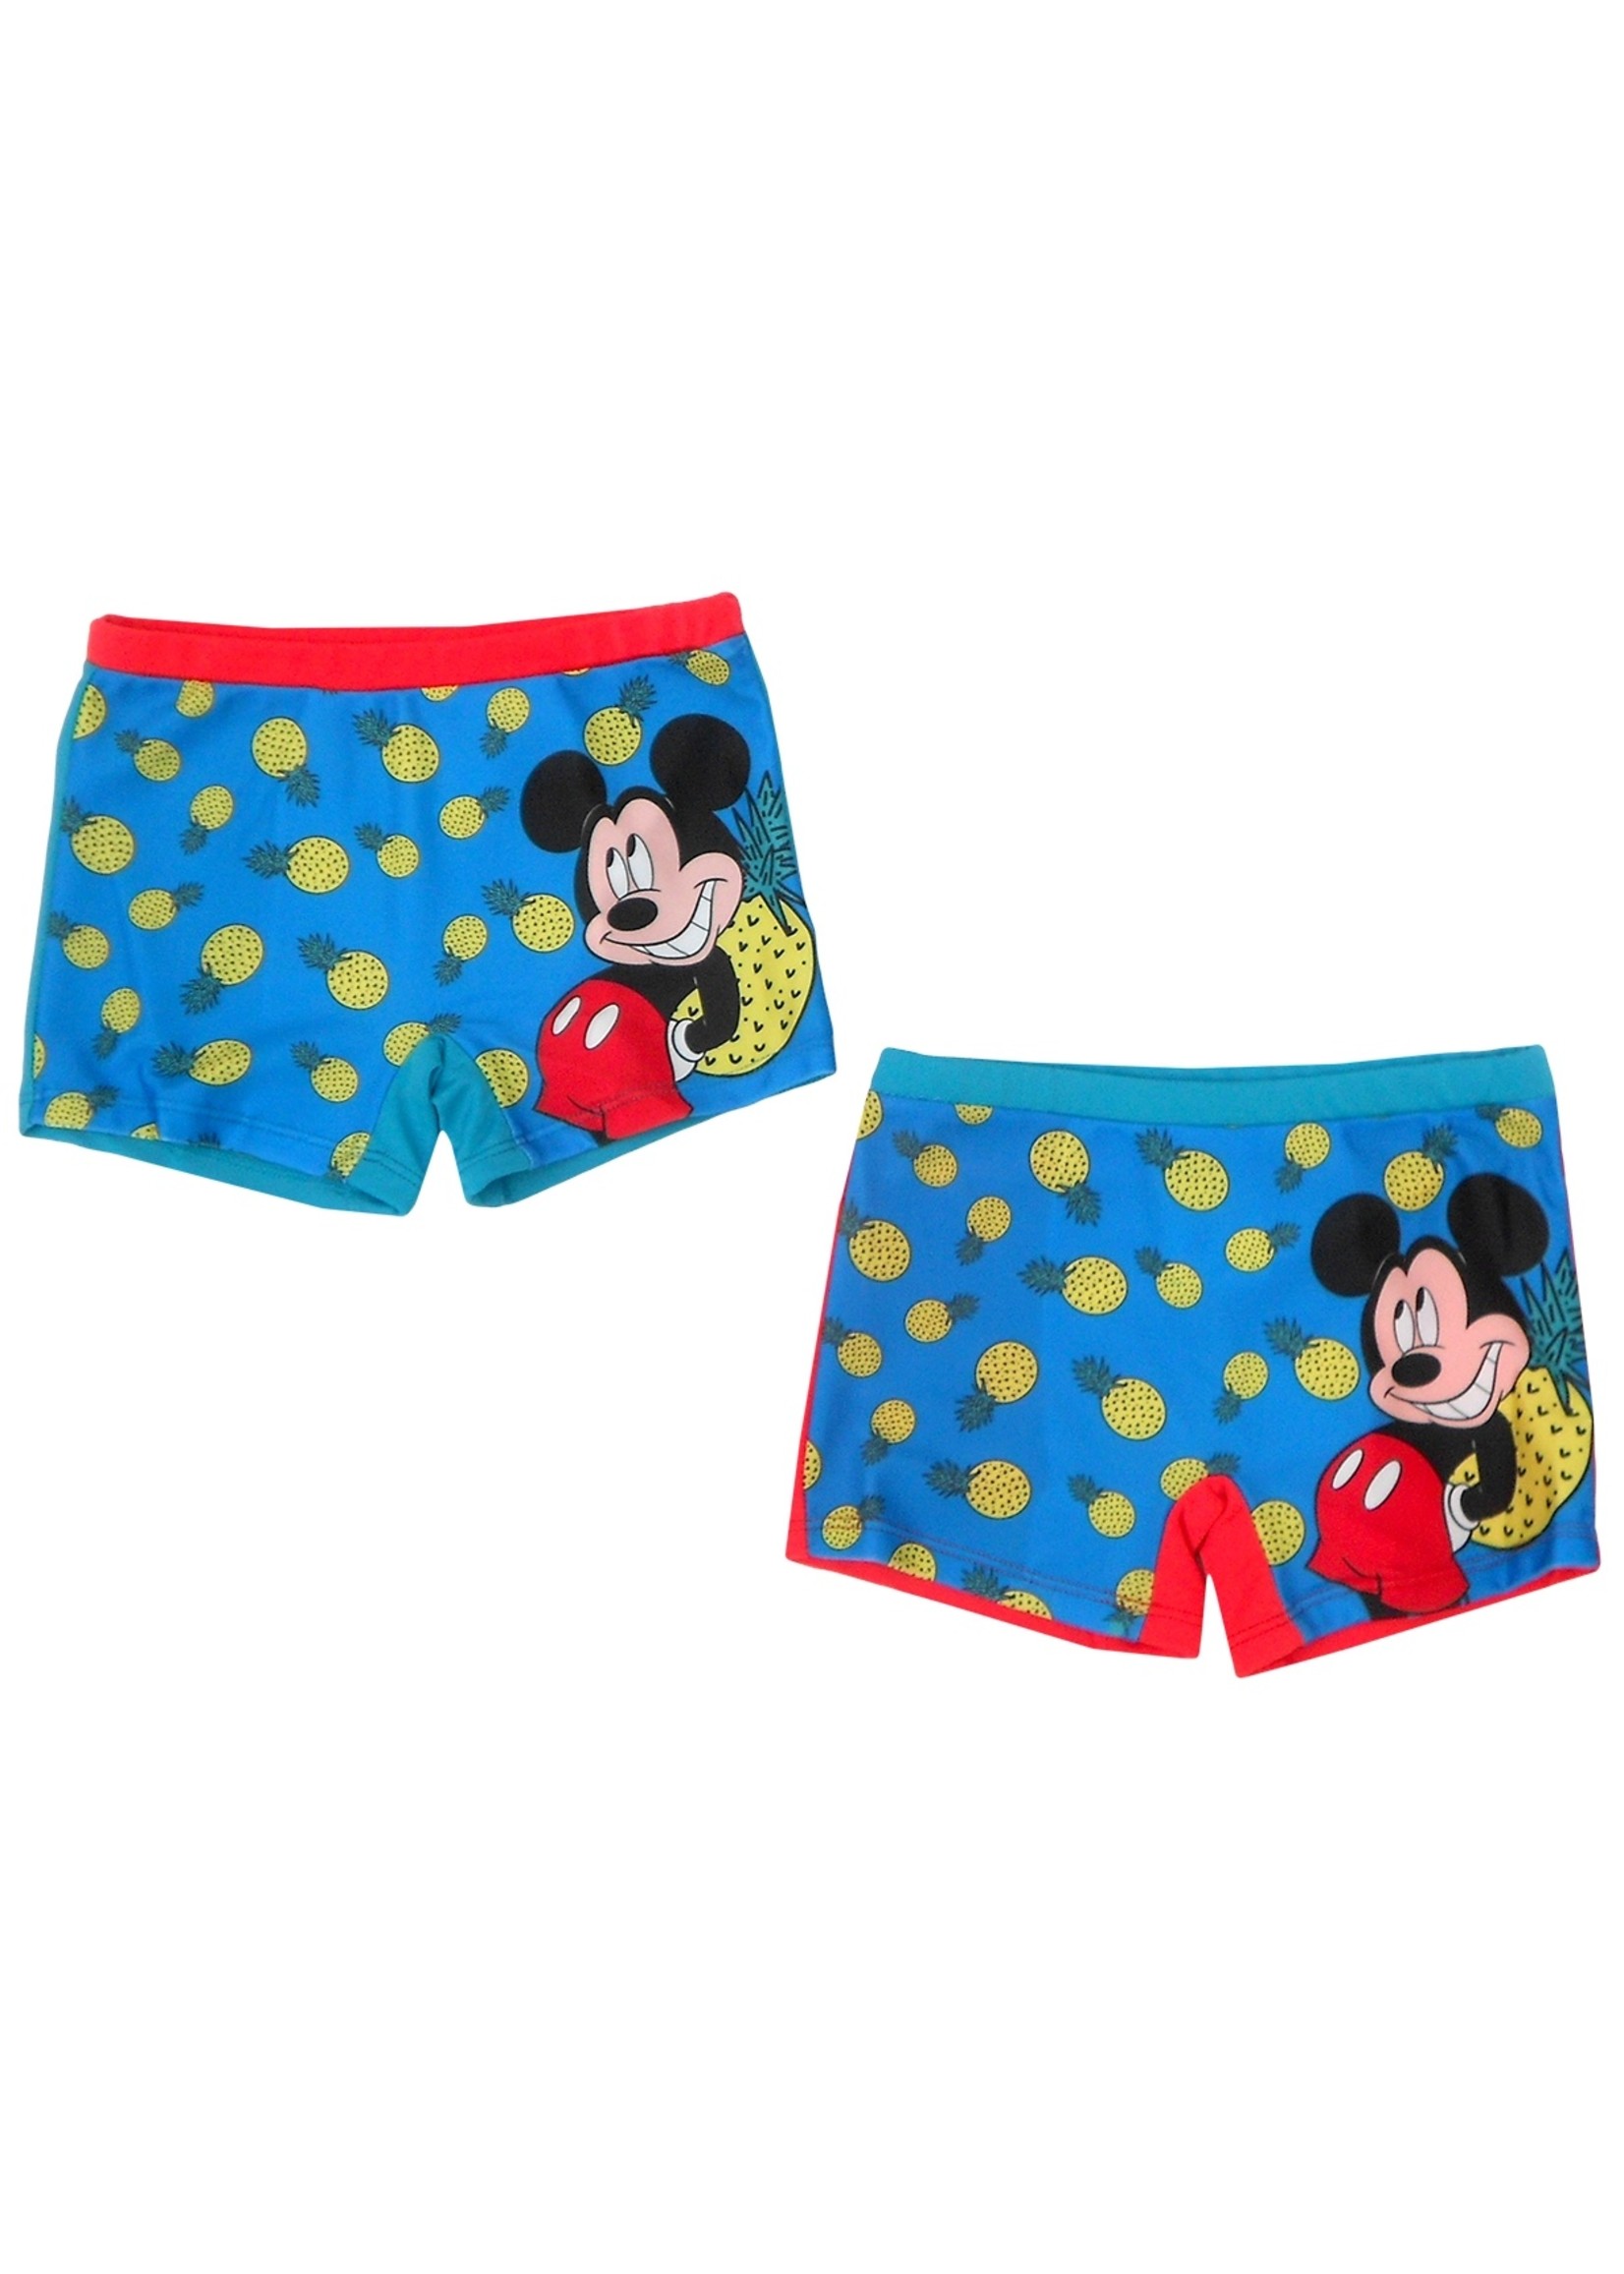 Disney Mickey Mouse zwembroek van Disney blauw-mintgroen